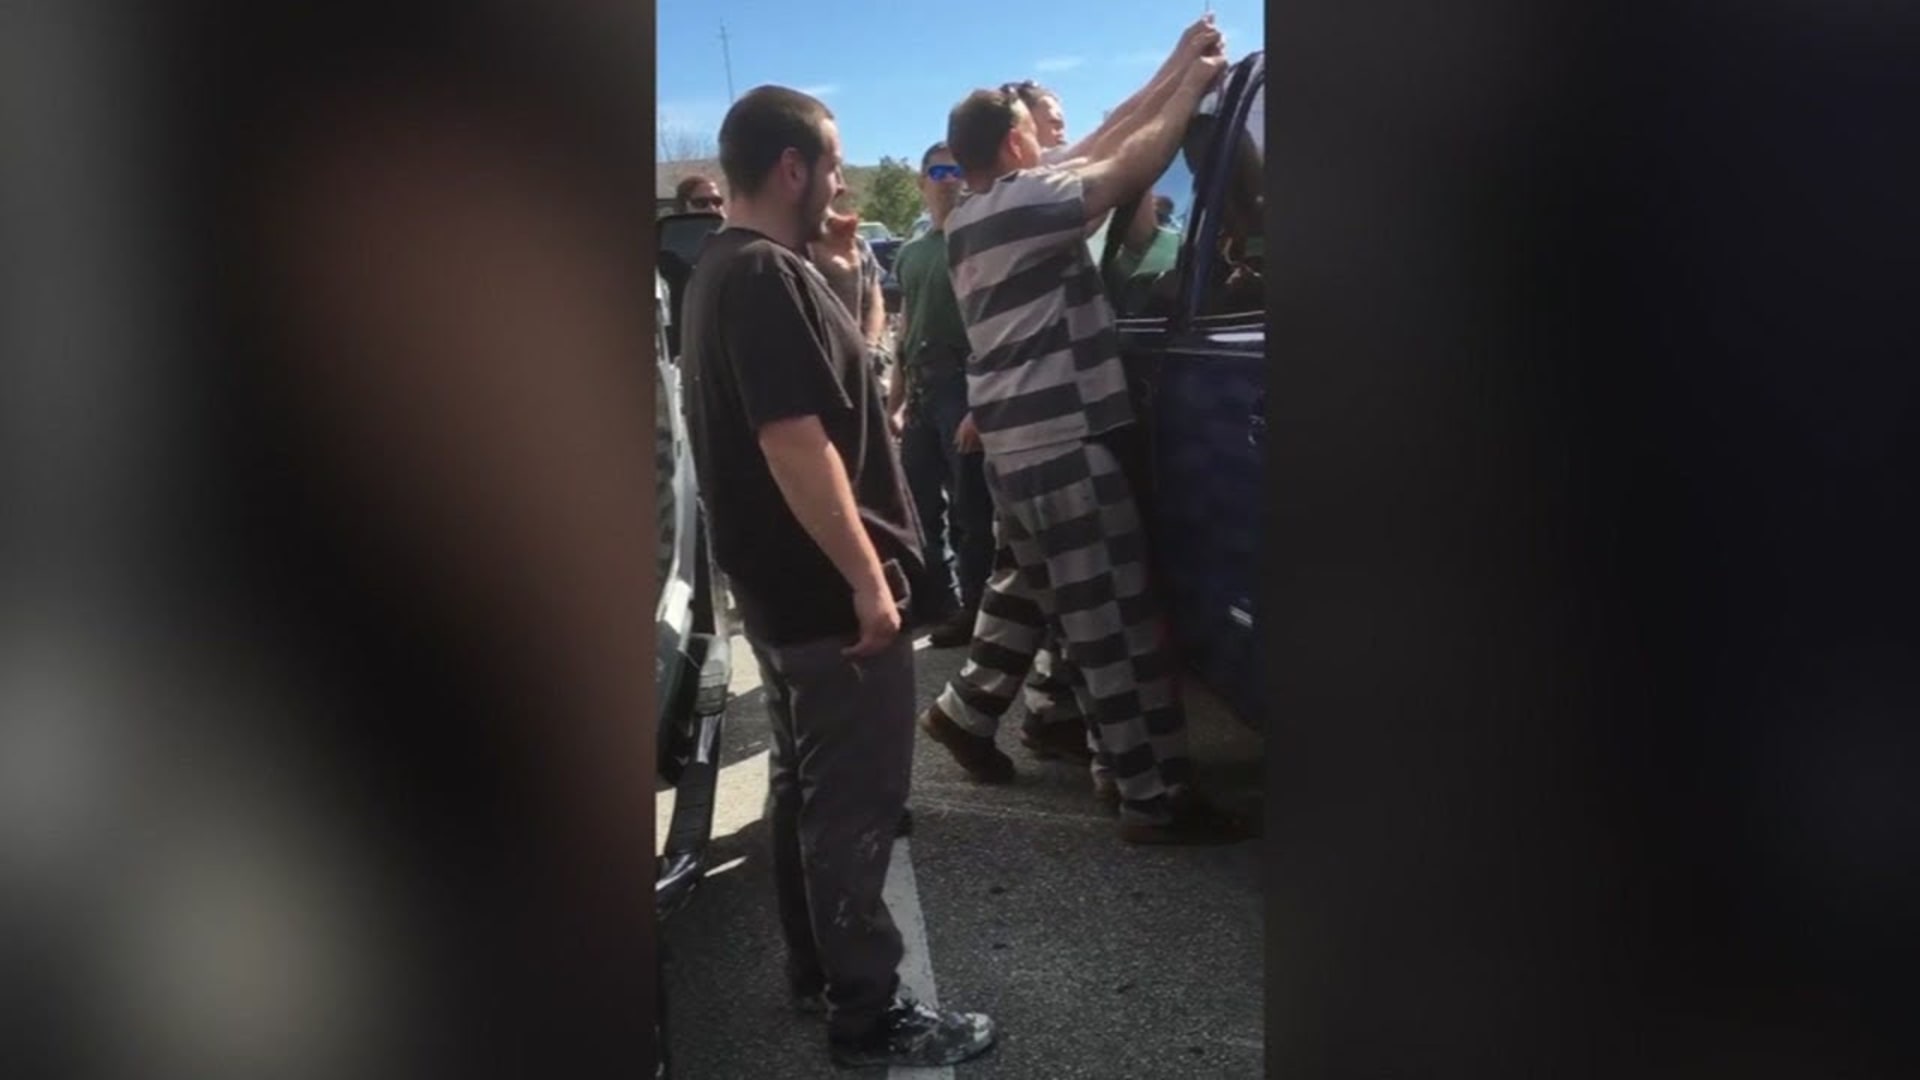 Vězni pomohli dostat dítě ze zamčeného auta 1